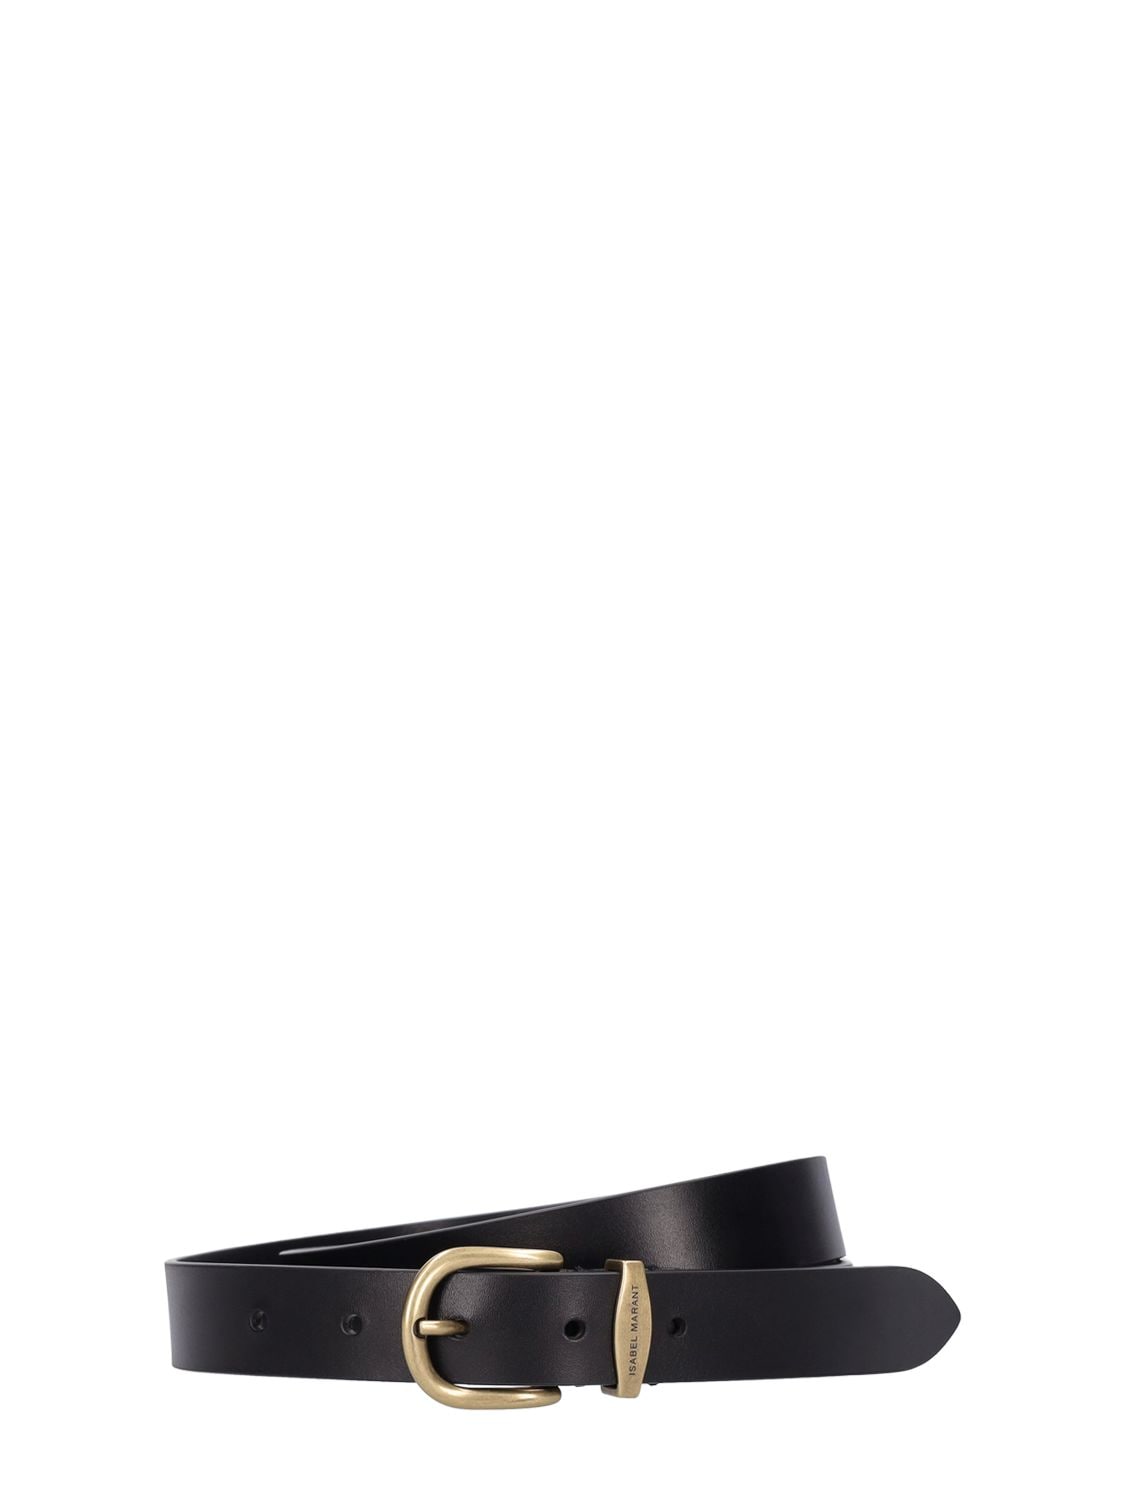 Isabel Marant 2.5cm Leather Belt In Black,gold | ModeSens